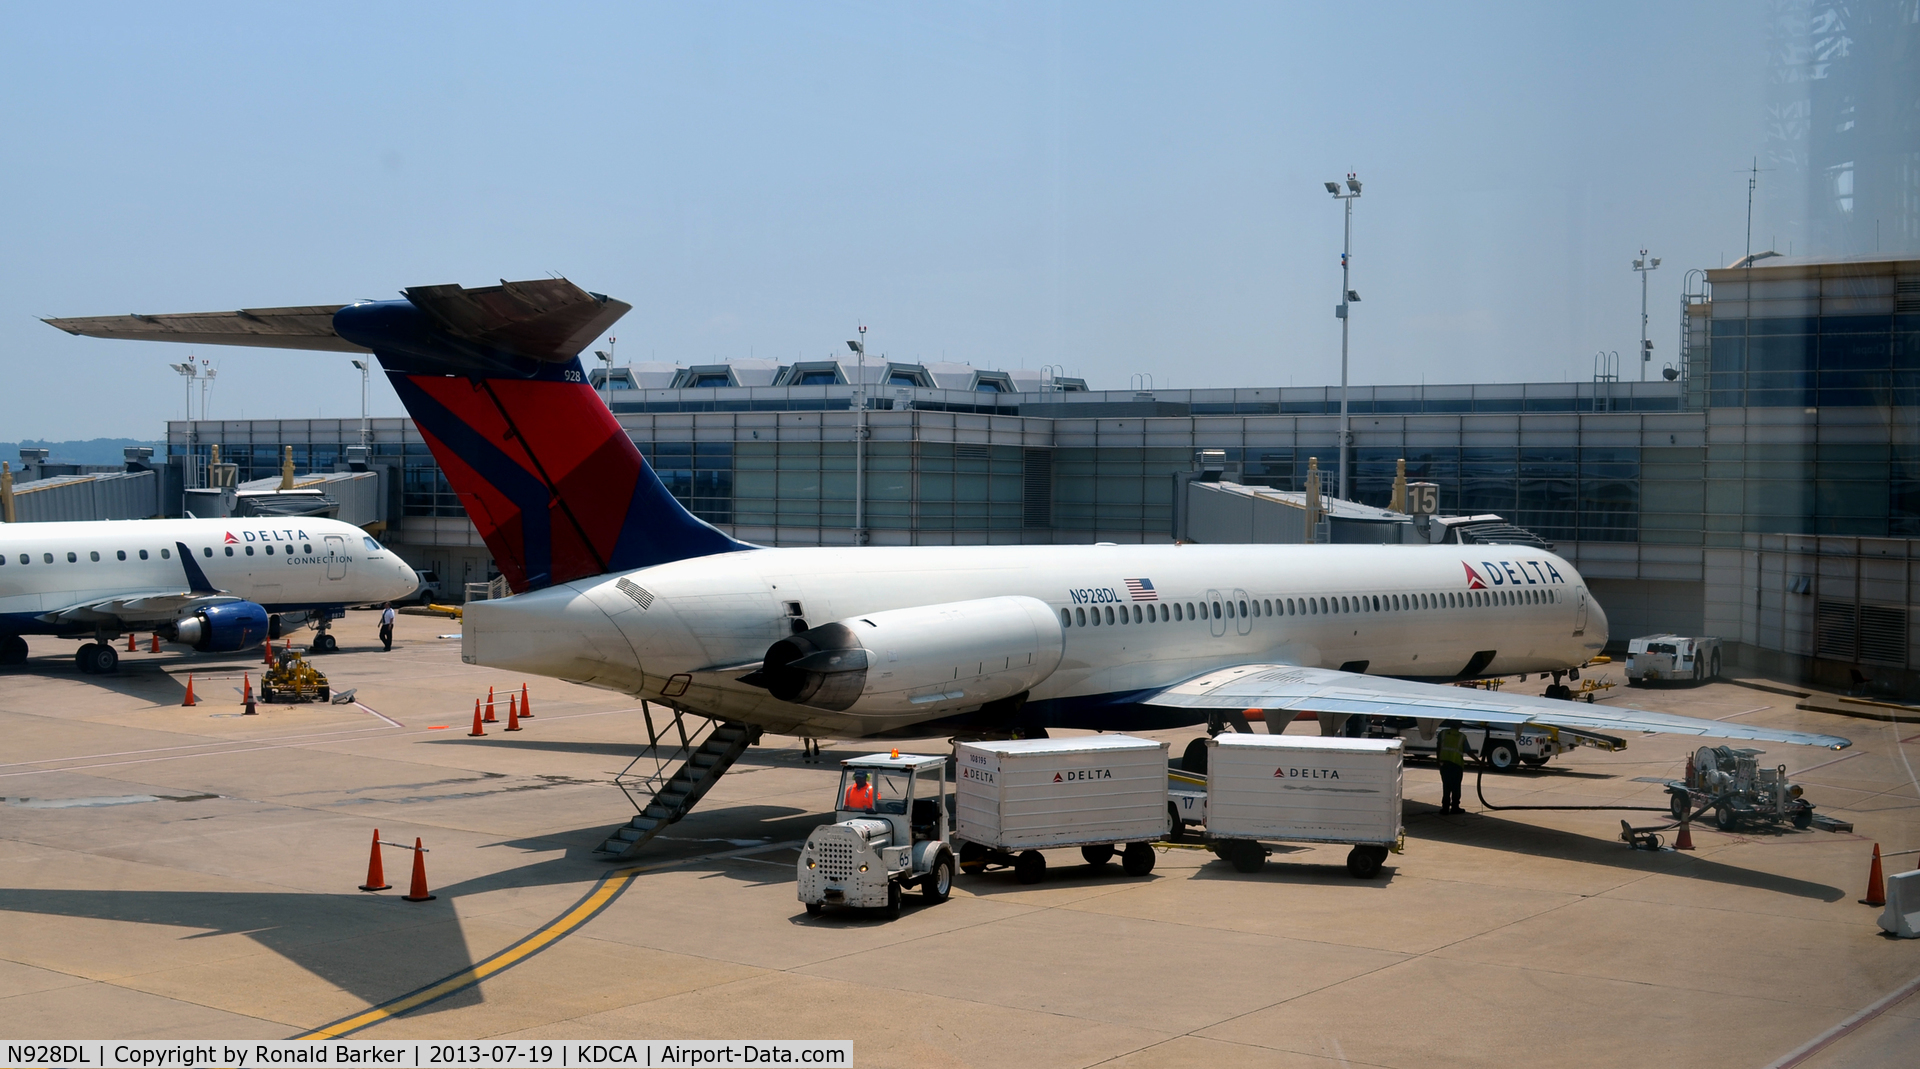 N928DL, 1988 McDonnell Douglas MD-88 C/N 49715, Gate 15 National